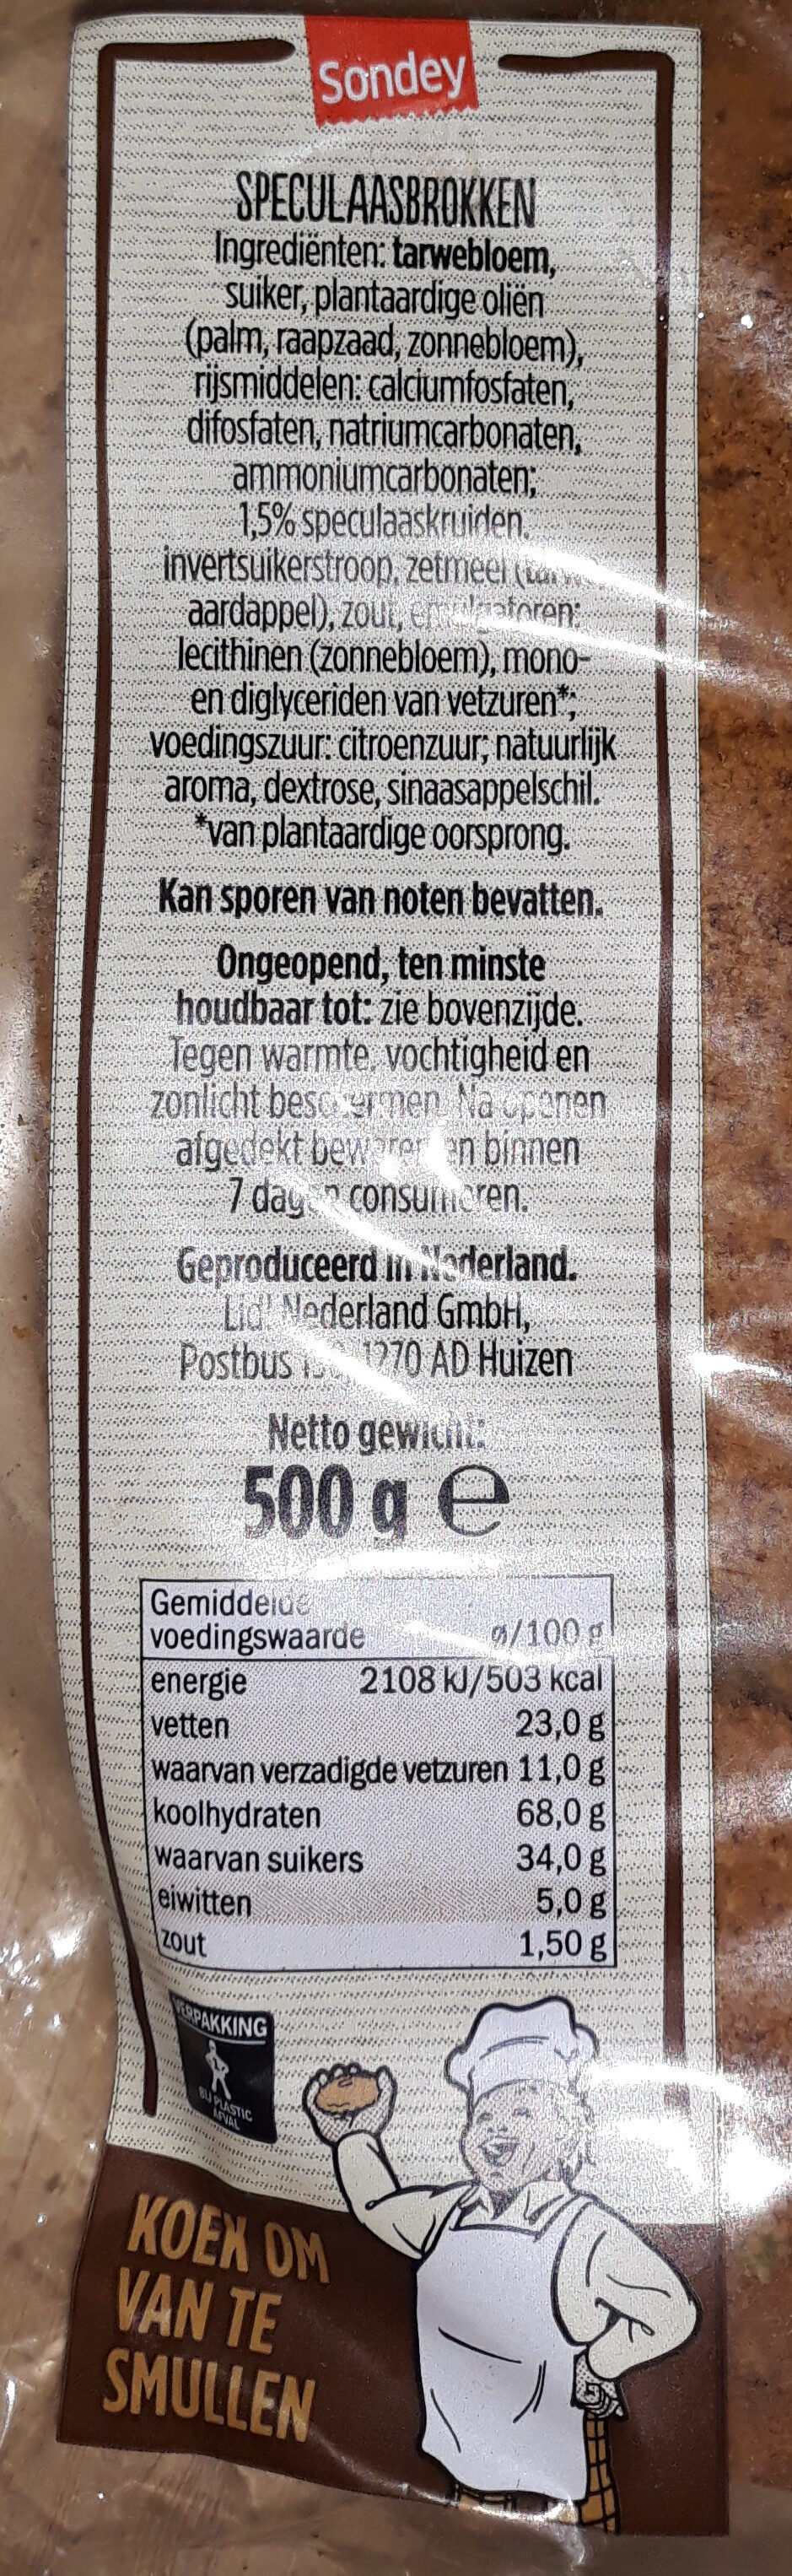 speculaasbrokken - Ingredients - nl